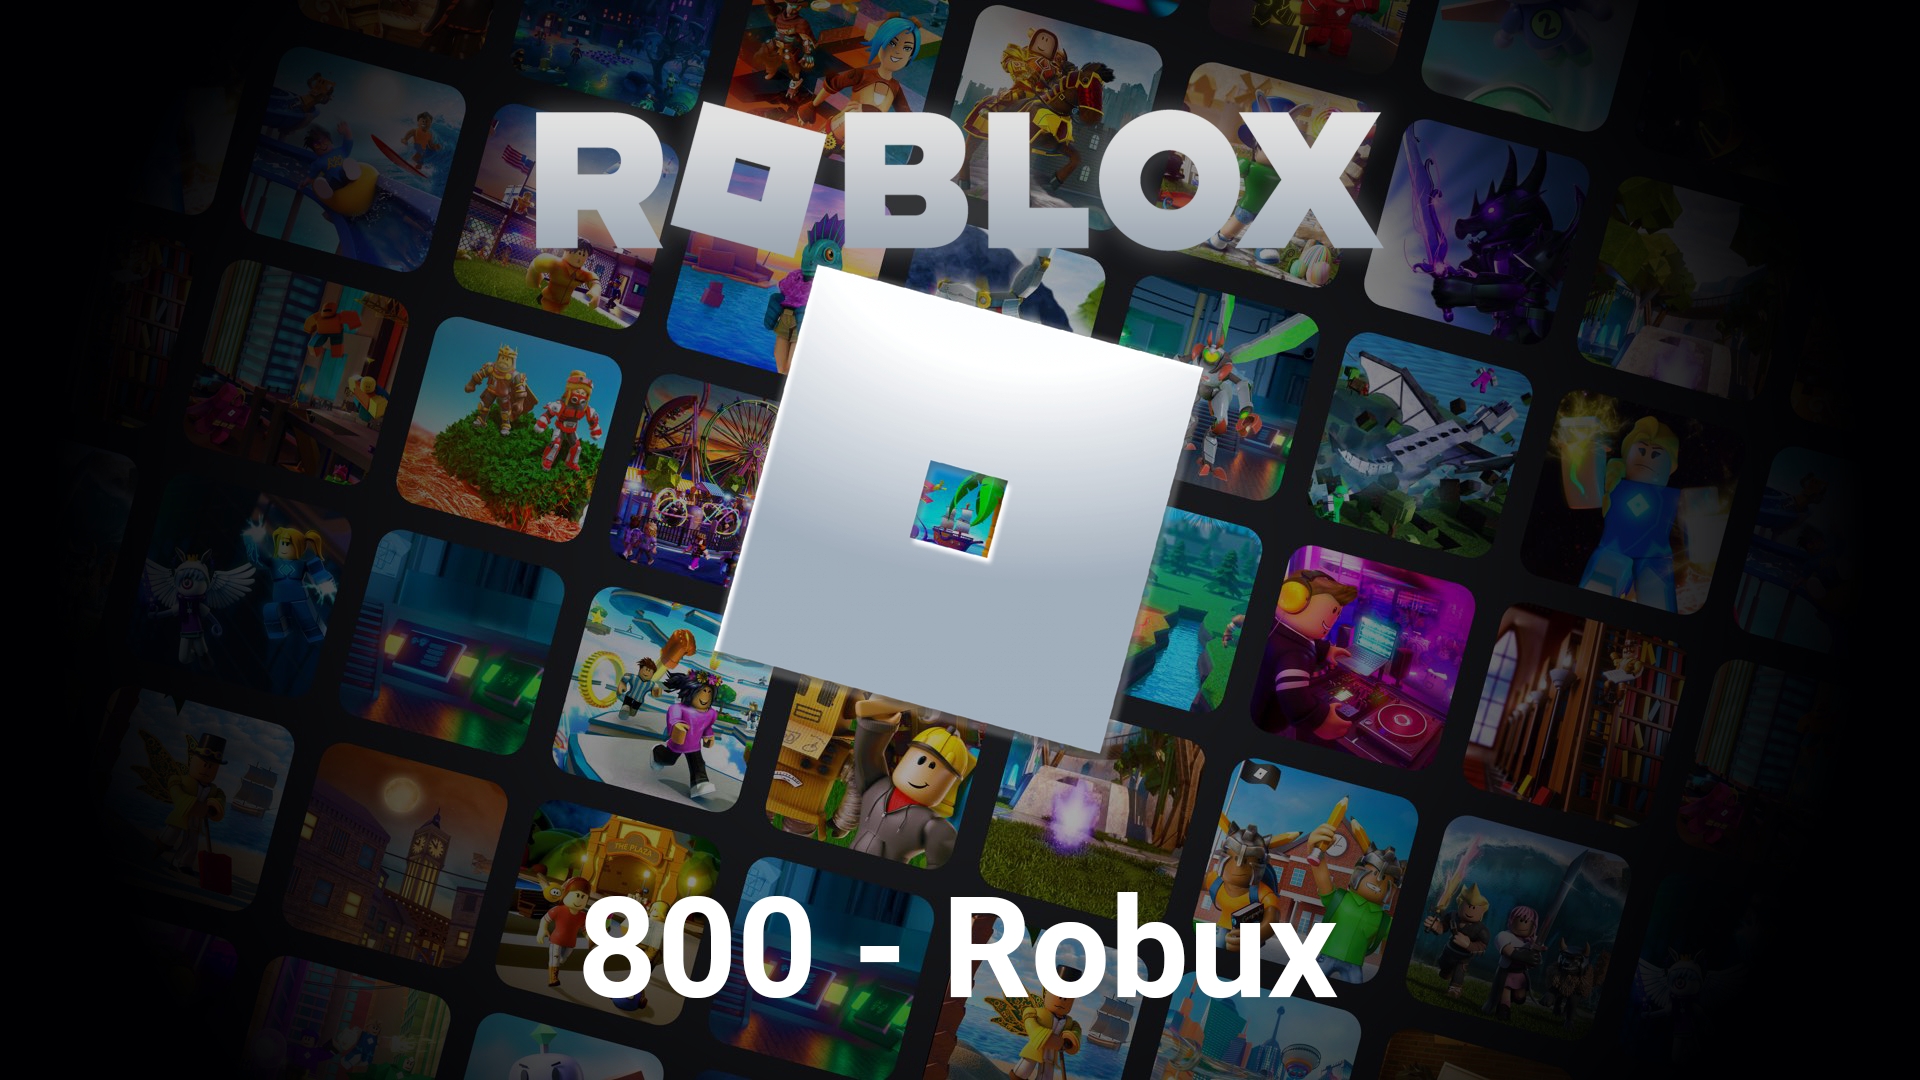 Comment puis-je activer un code promotionnel Roblox ? – Support Roblox